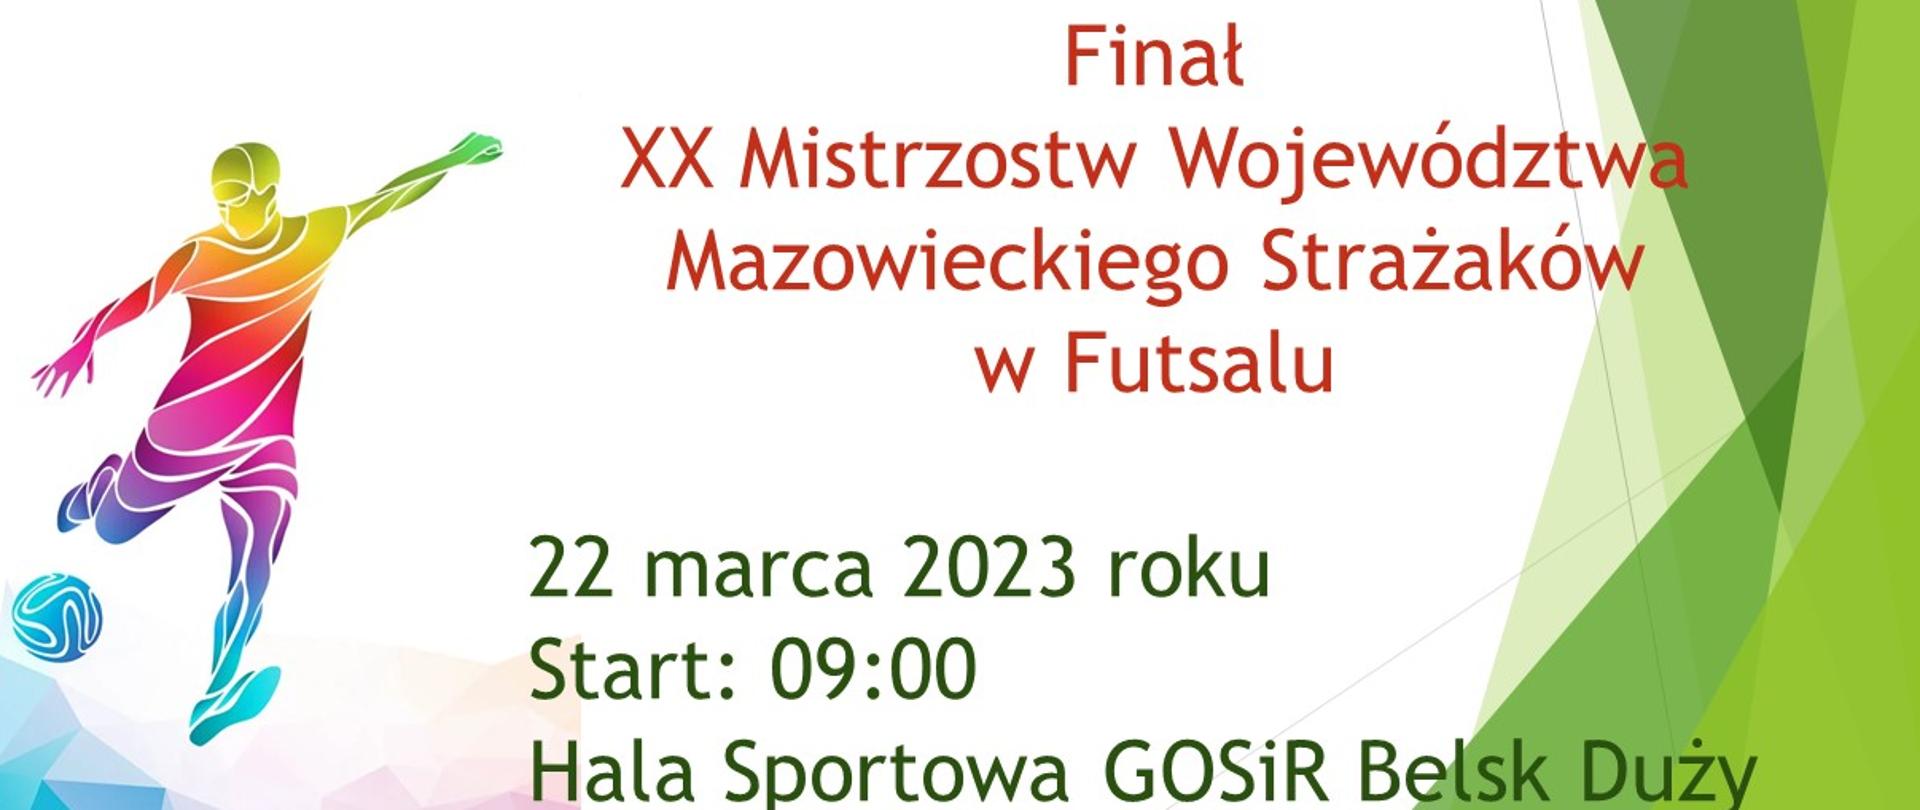 Finał XX Mistrzostw Województwa Mazowieckiego Strażaków w Futsalu